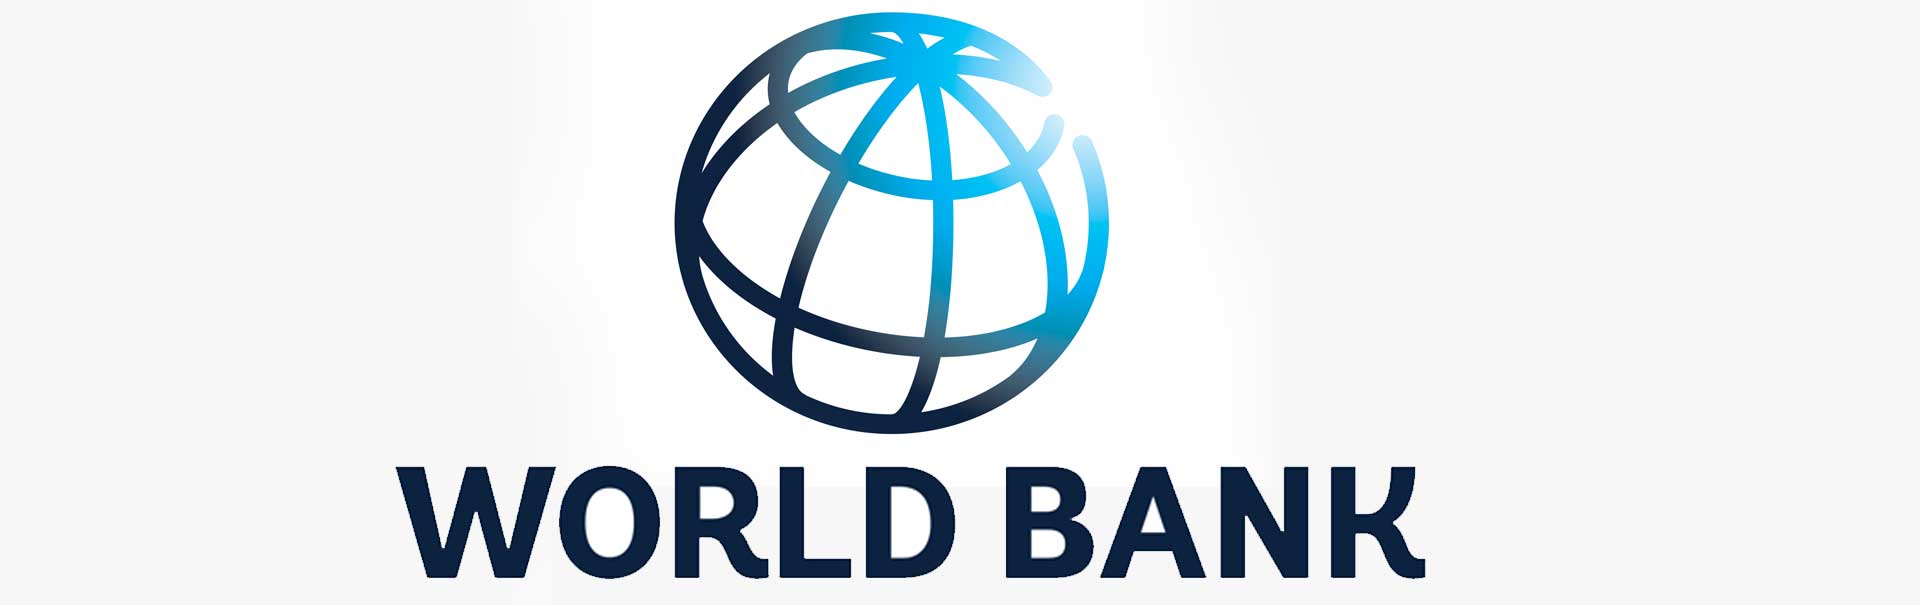 कोरोनाबाट अर्थतन्त्रमा ठूलो असर पर्ने विश्व बैंकको चेतावनी